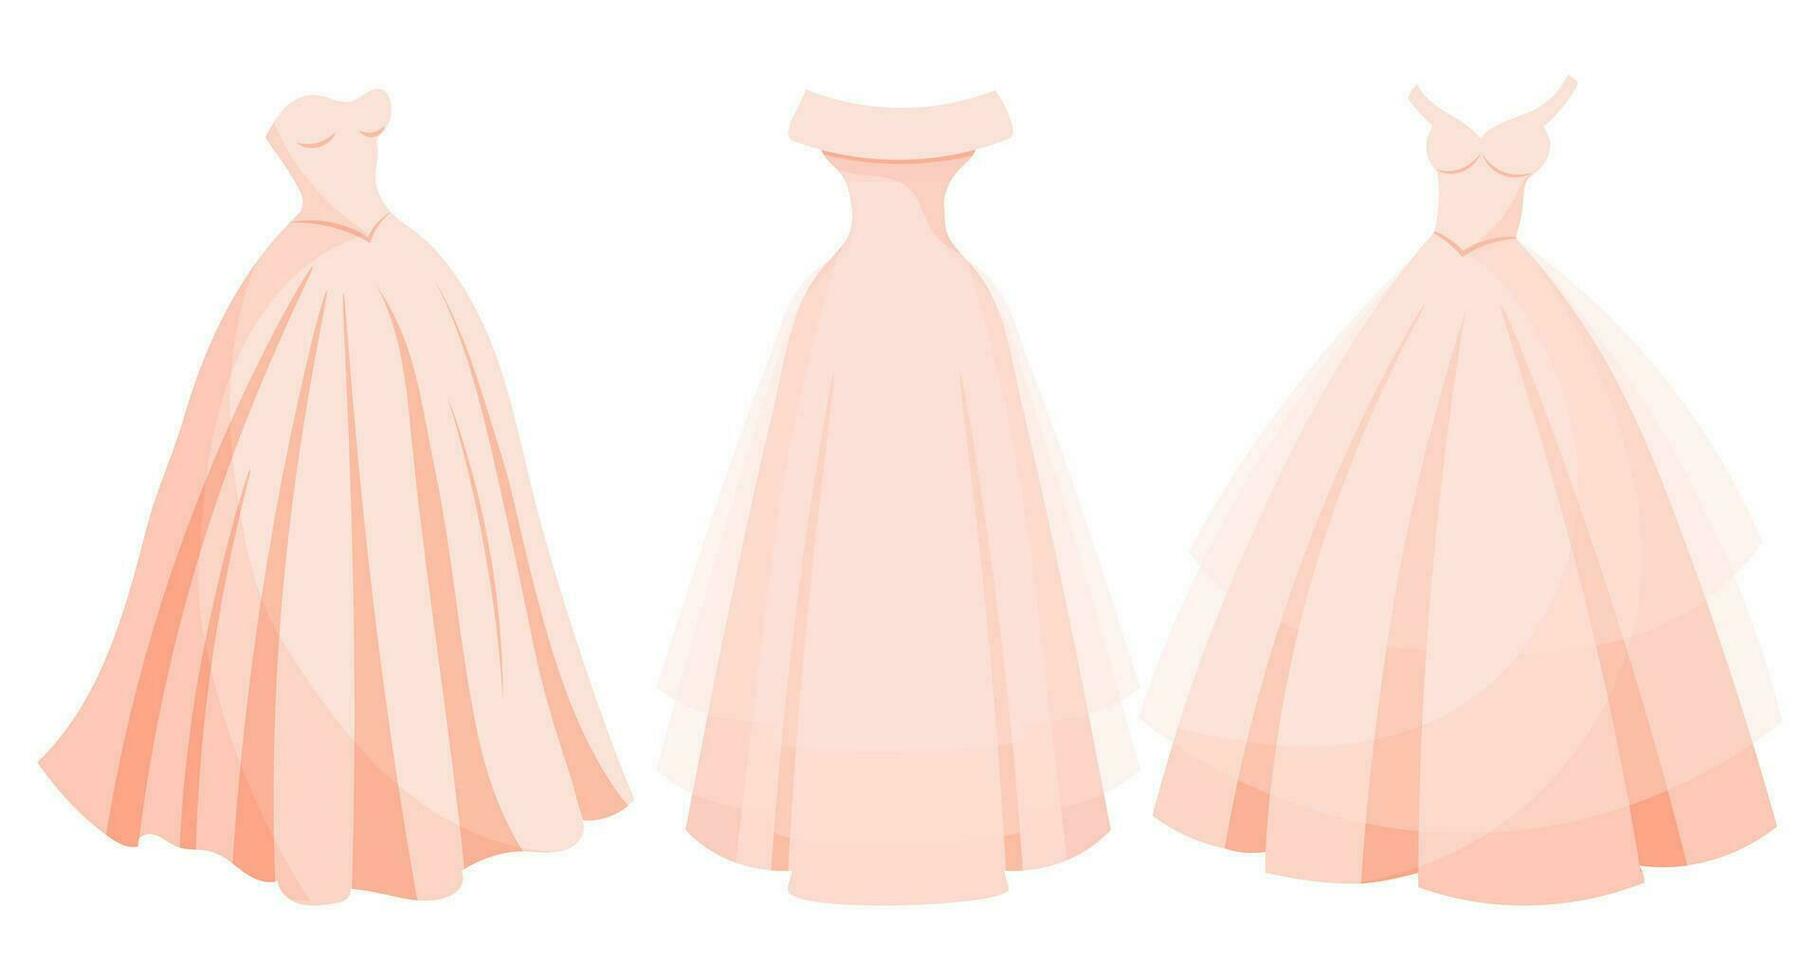 reeks van luxe roze jurken, prinses bruiloft jurken verzameling. mode. illustratie, vector